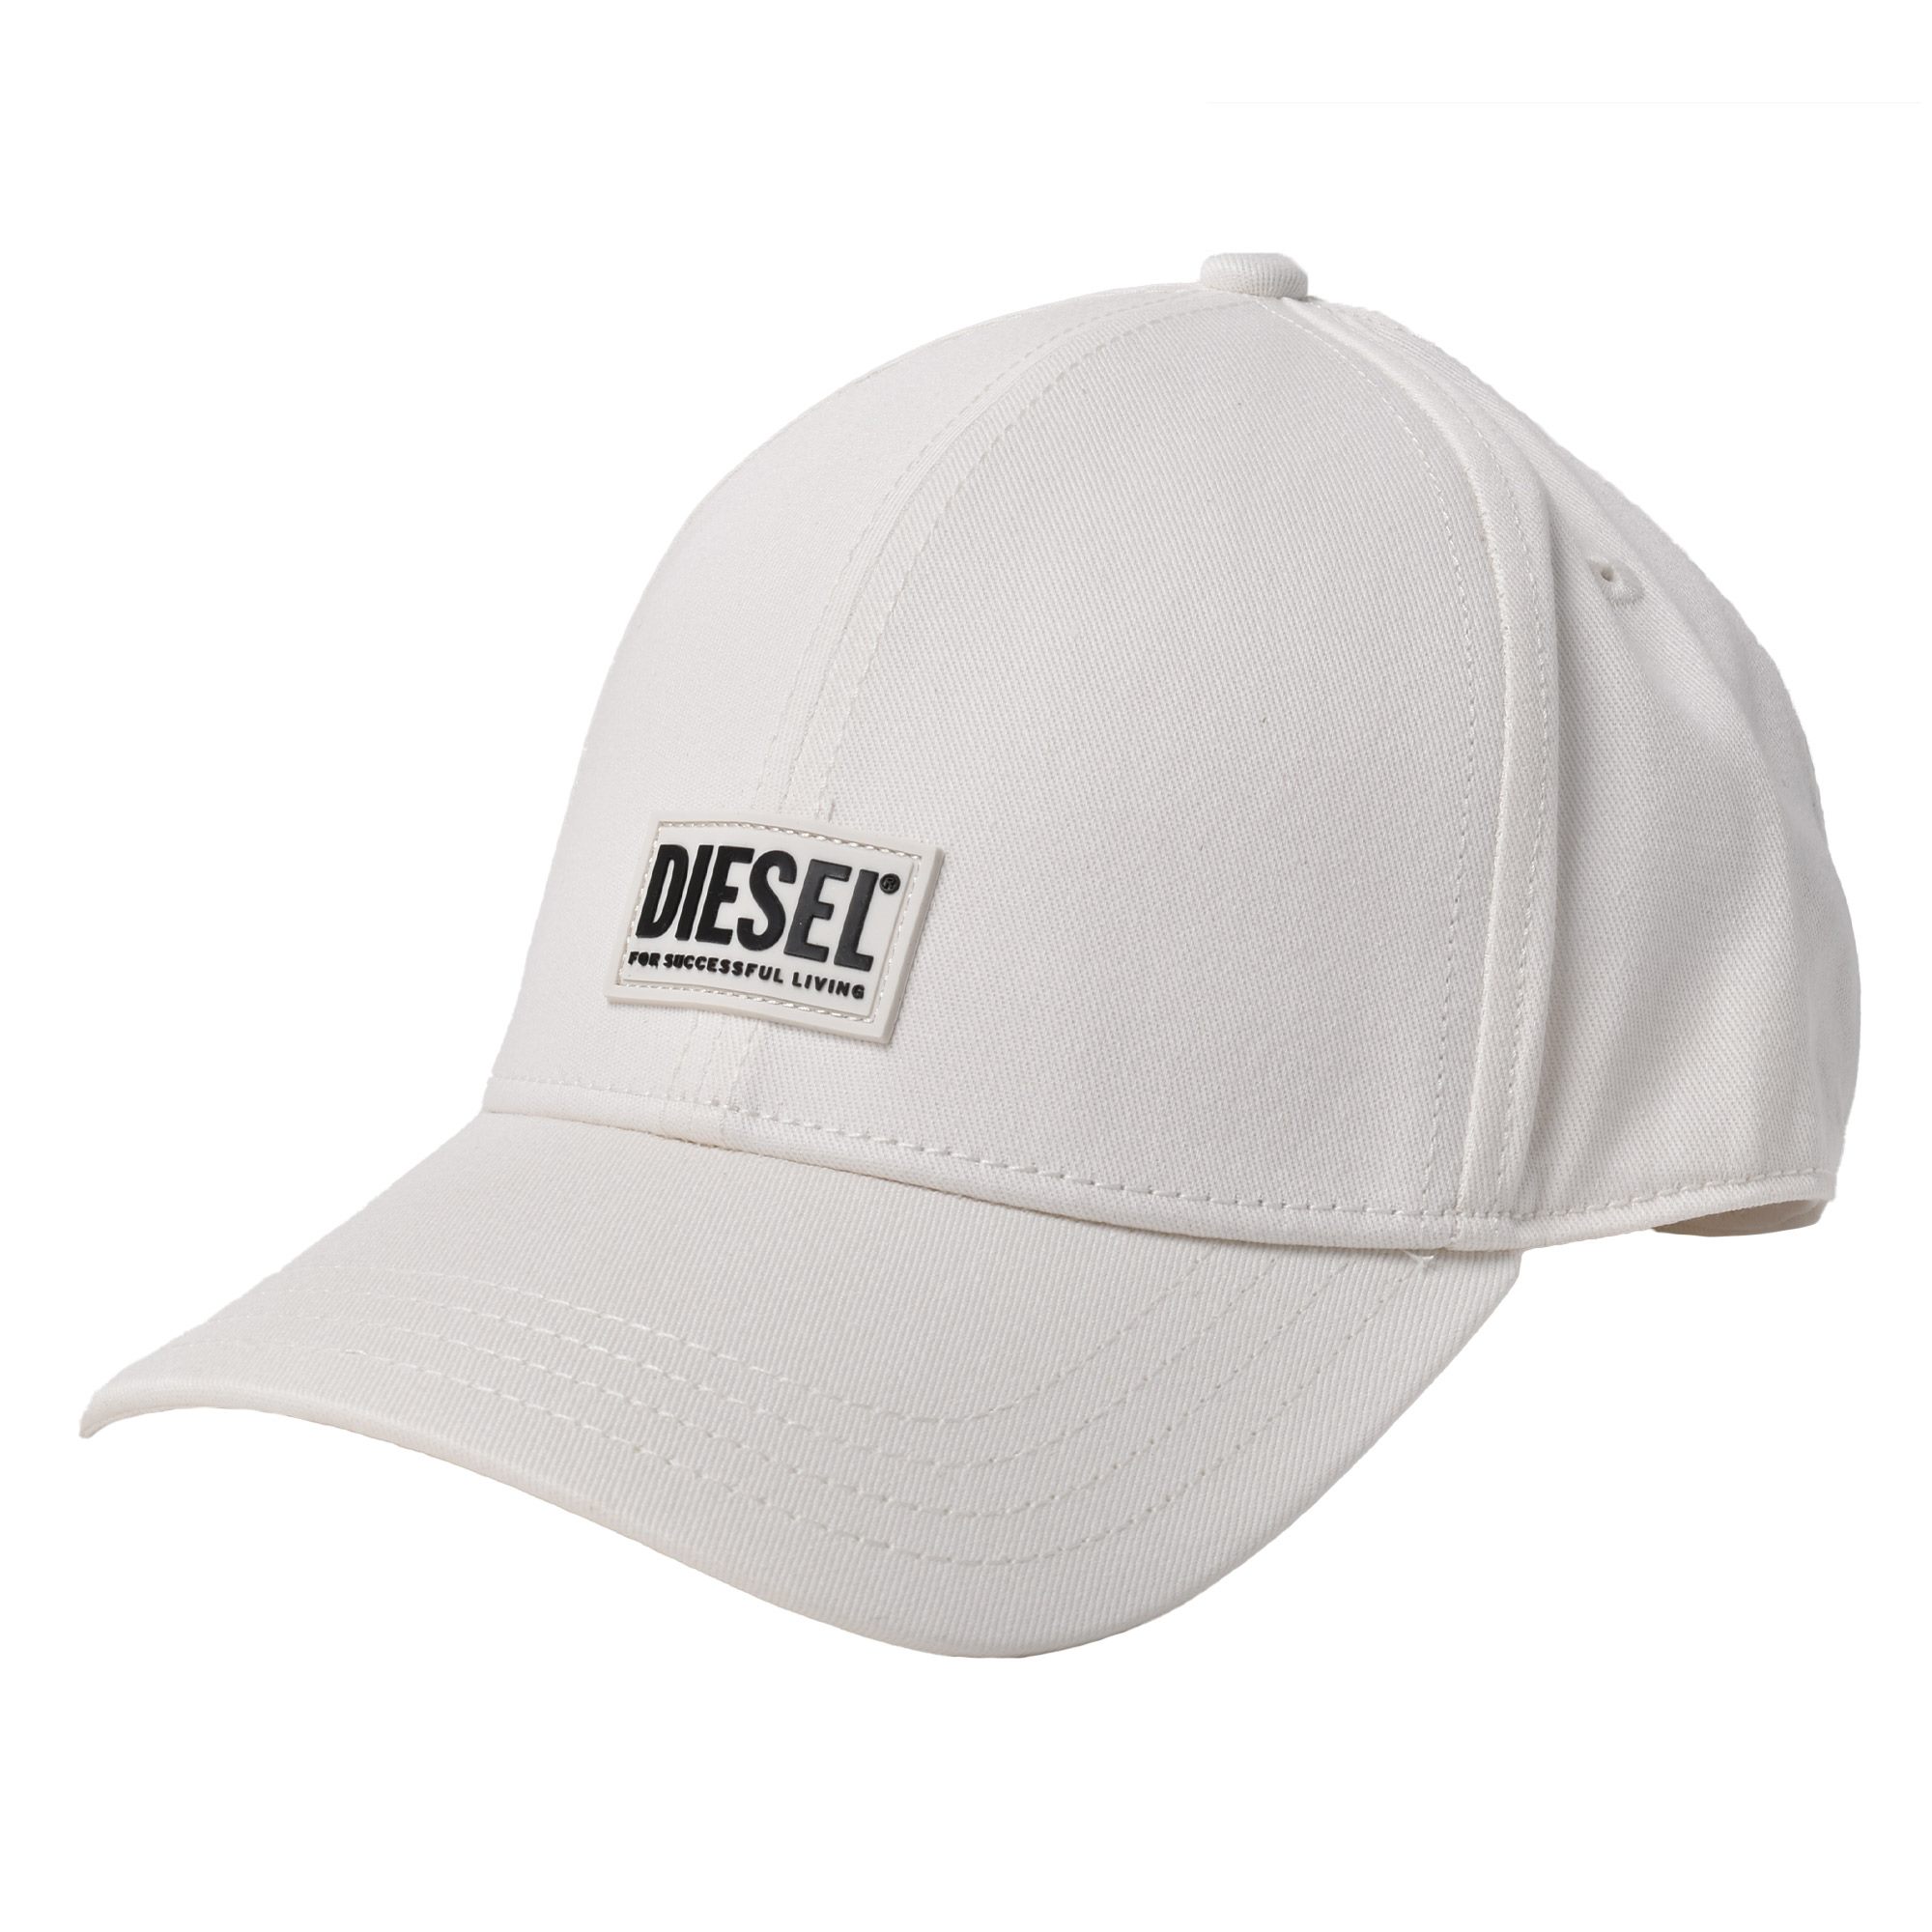 送料無料 ディーゼル キャップ メンズ CORRY-GUM HAT DIESEL A02746 帽子 ベースボールキャップ ロゴ カジュアル